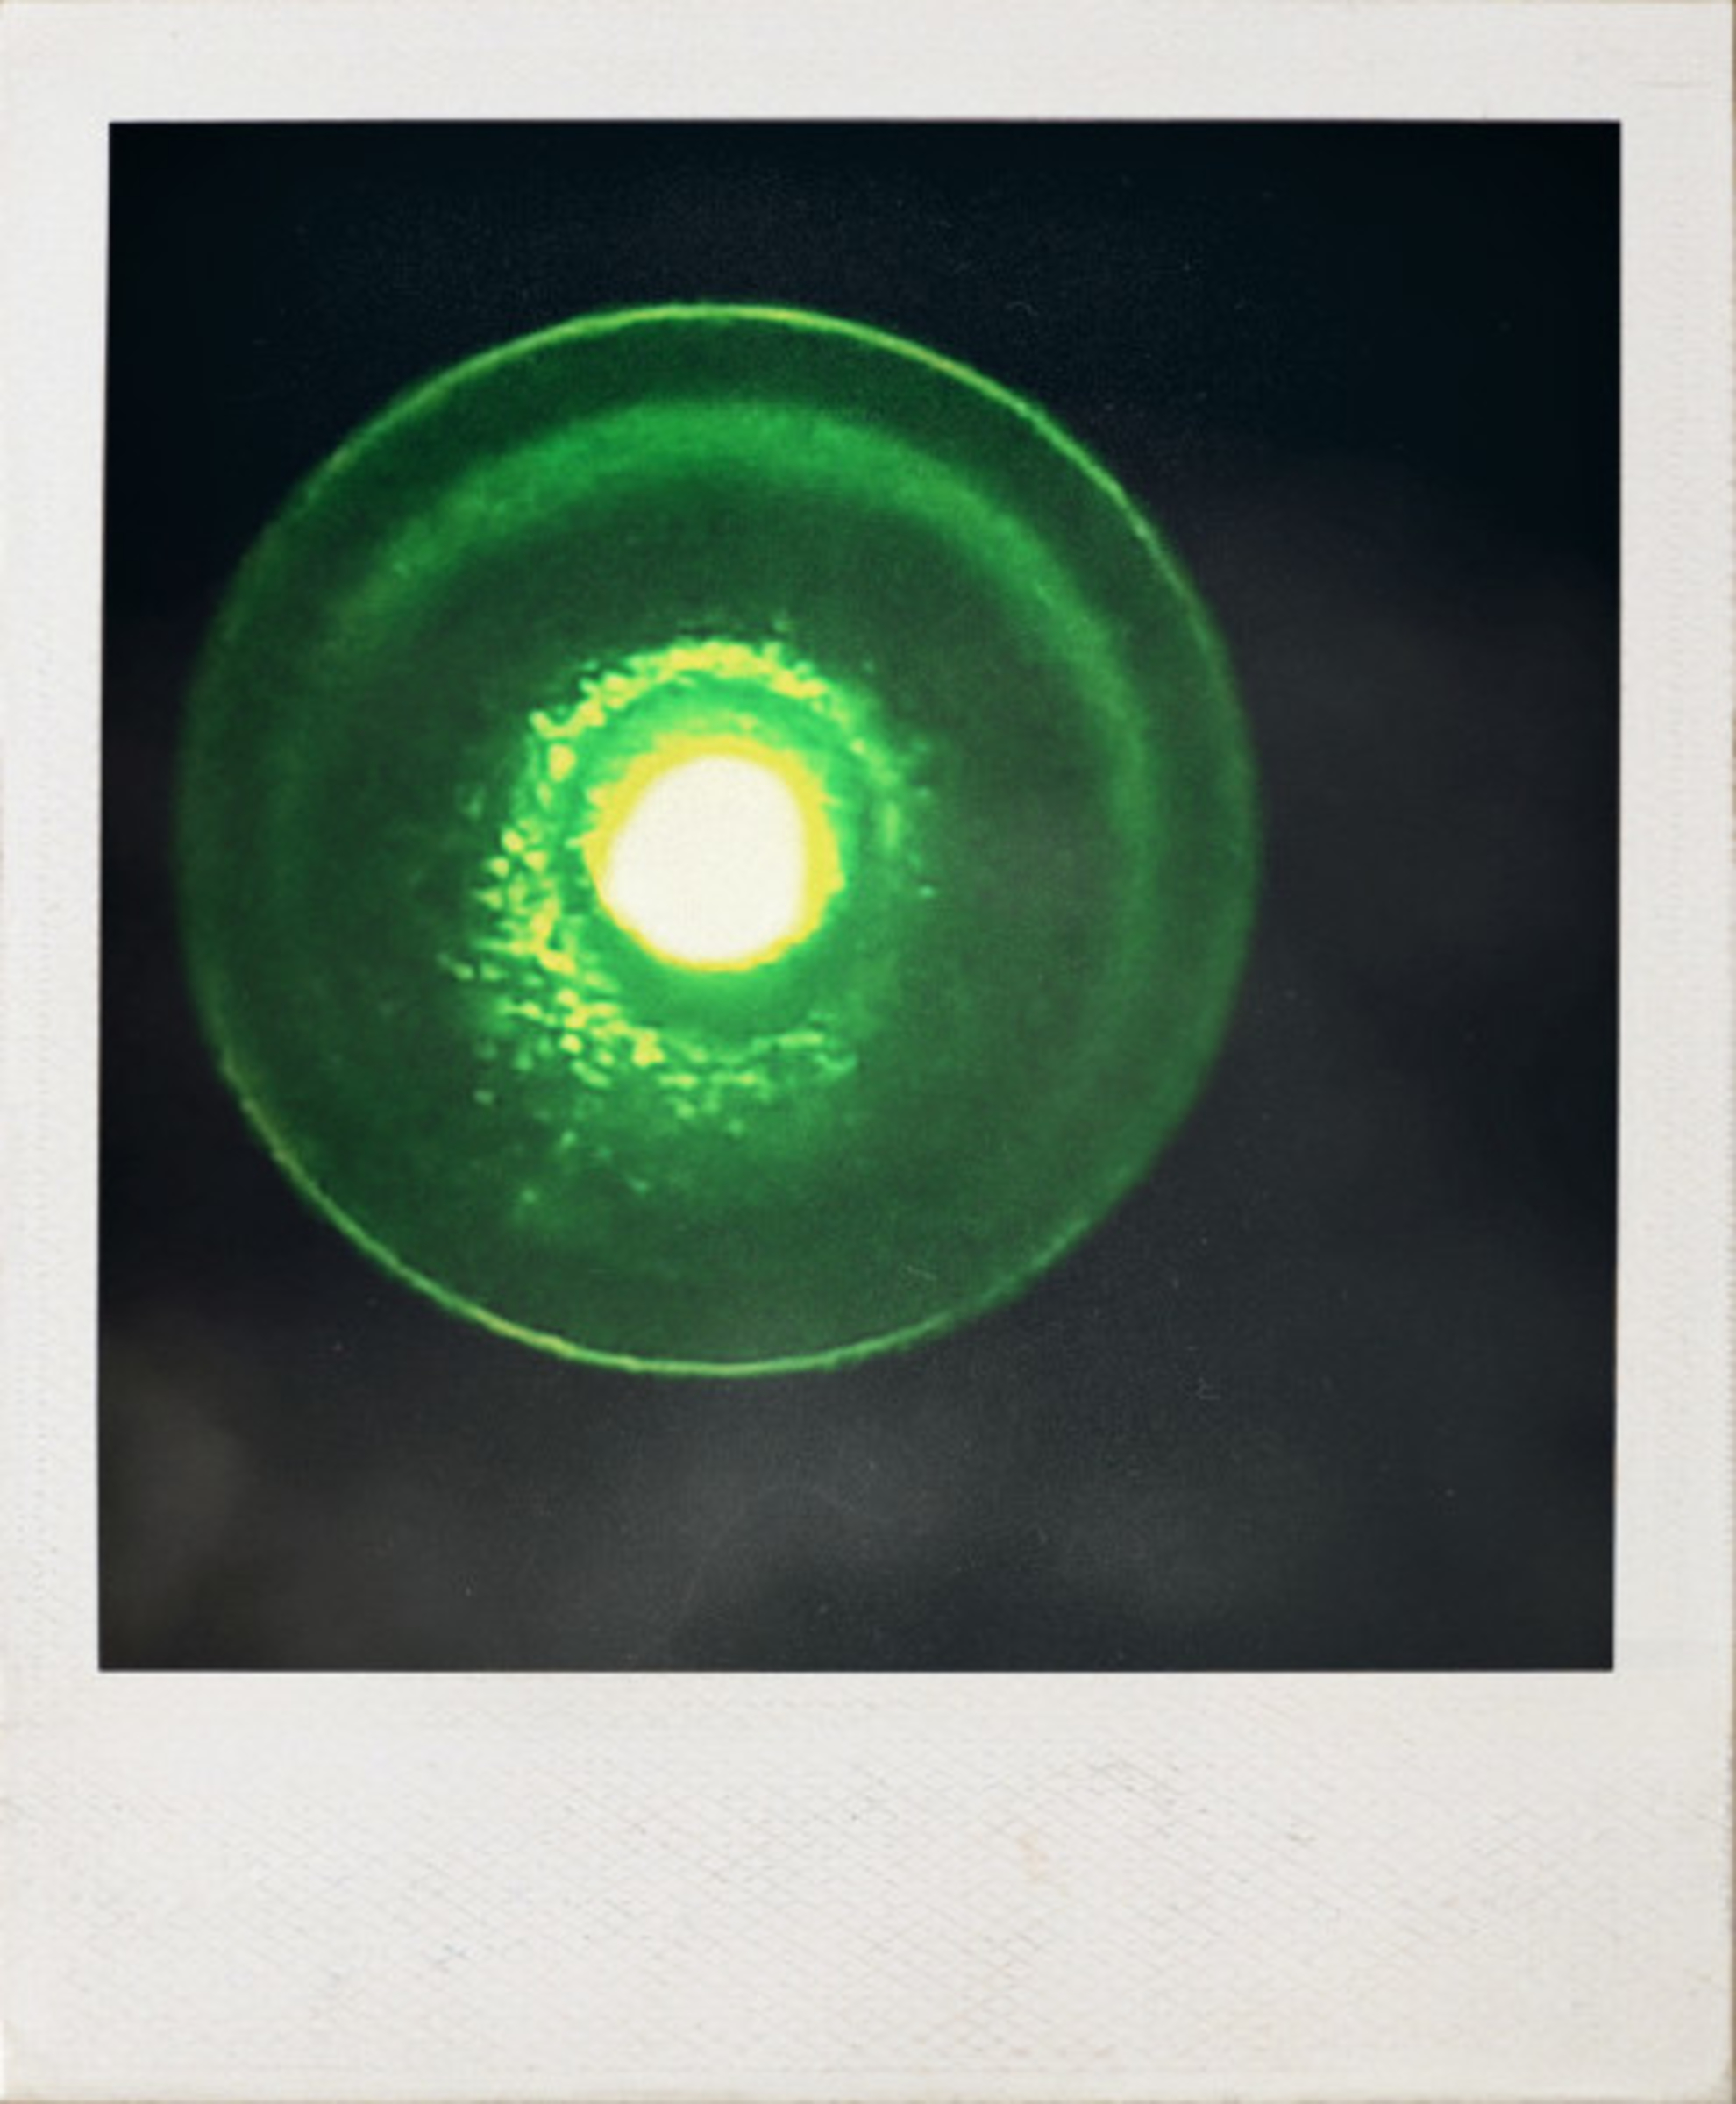 Another Rendlesham UFO photo has emerged Ufo1980